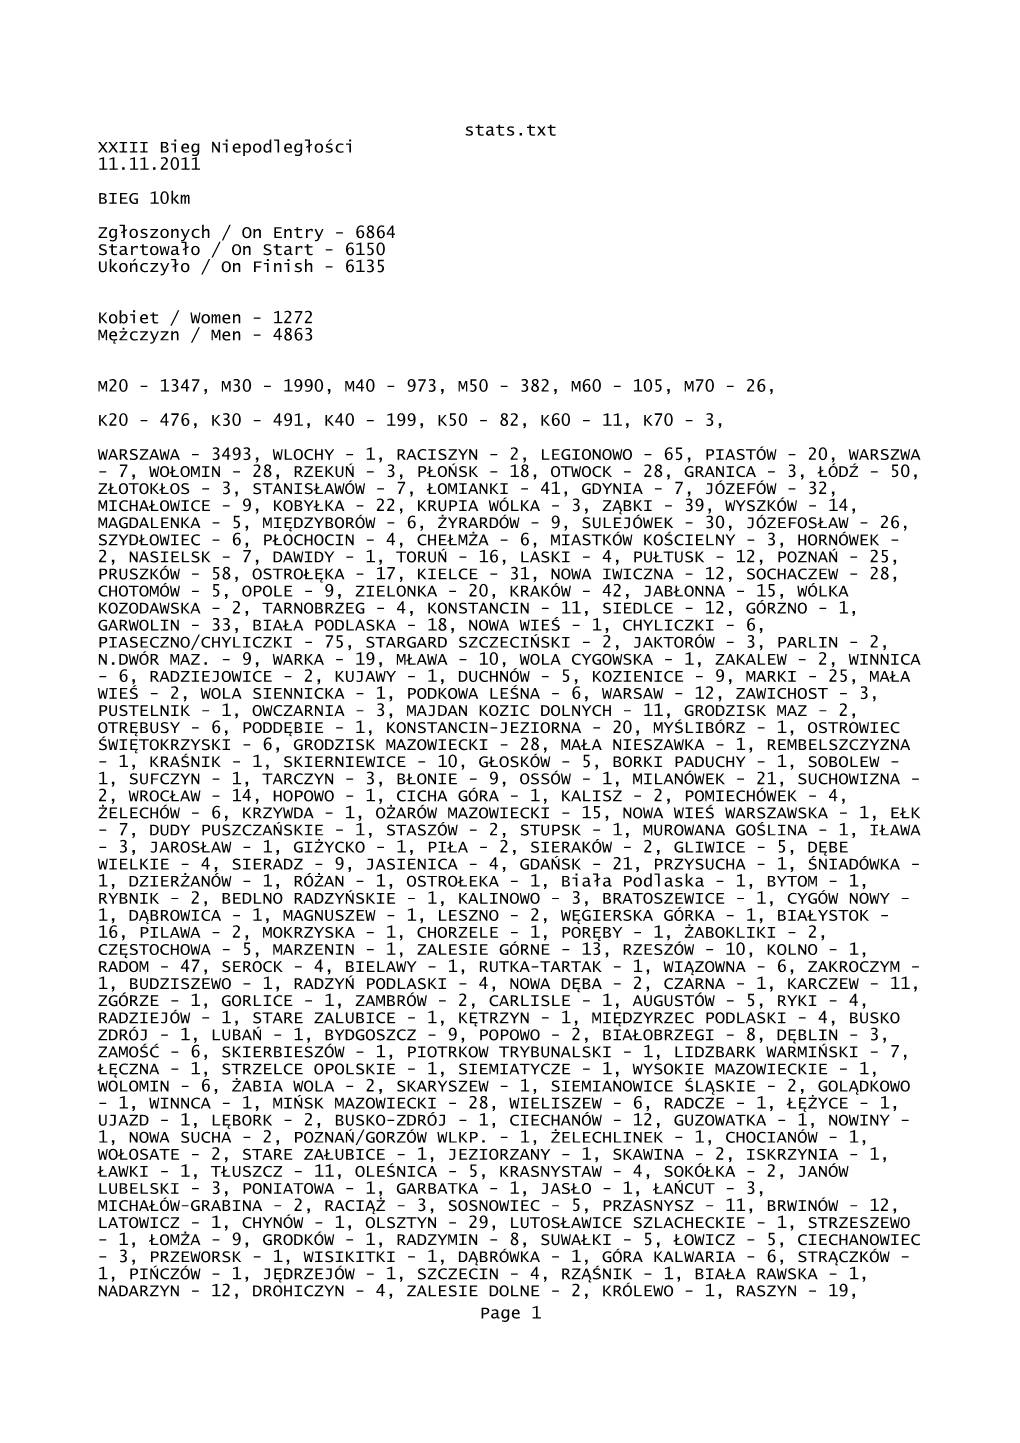 Stats.Txt XXIII Bieg Niepodległości 11.11.2011